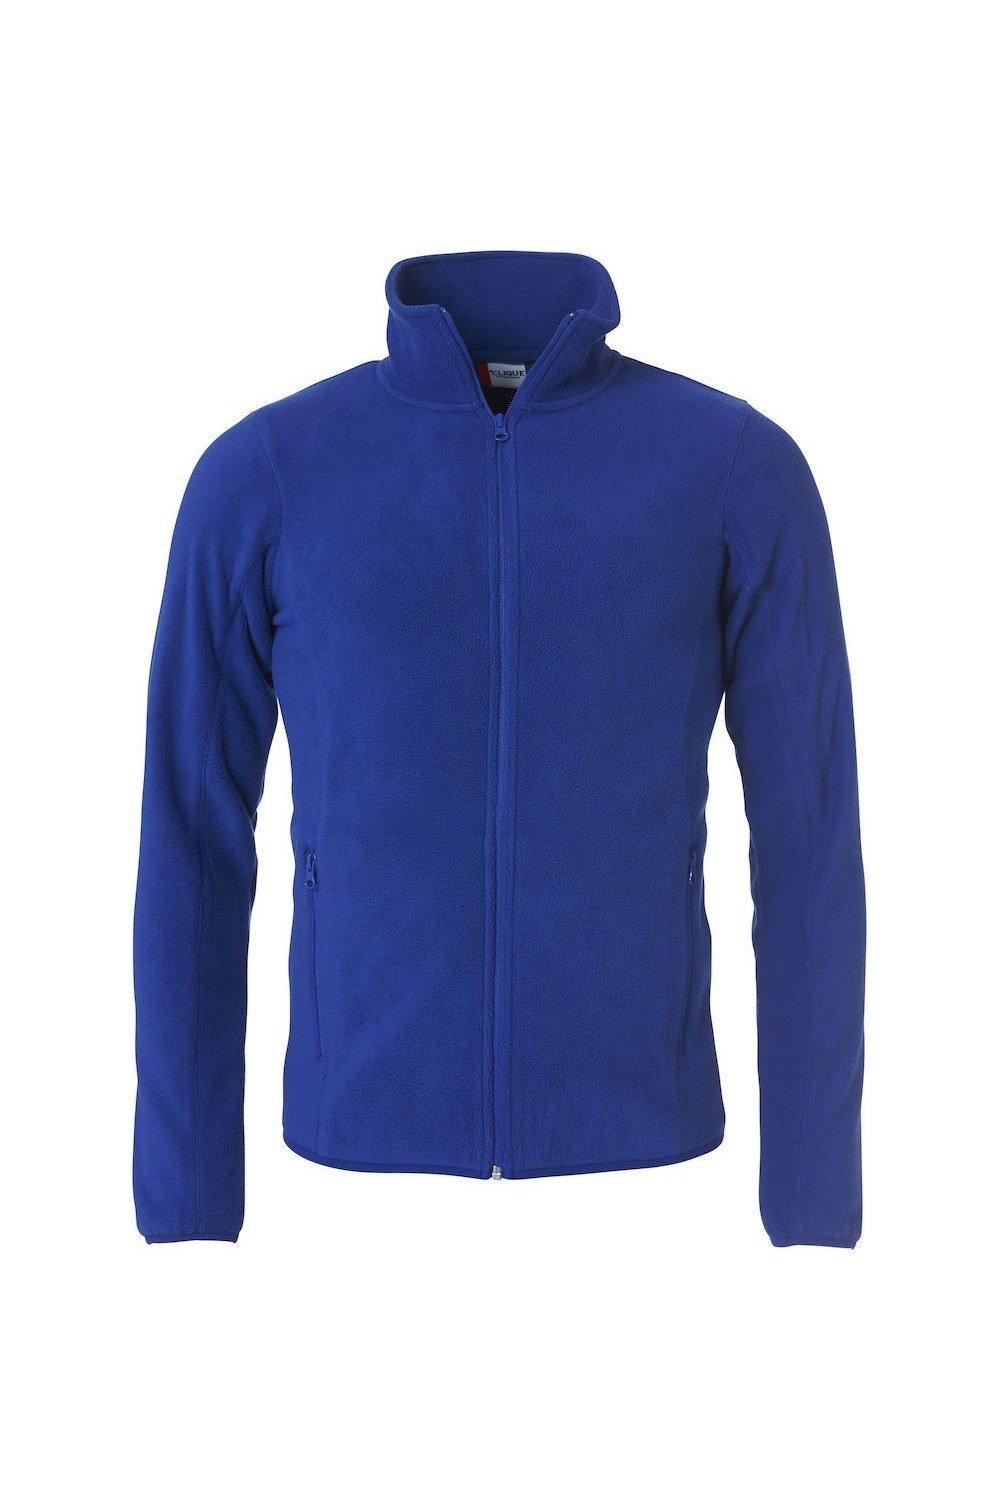 Базовая флисовая куртка Clique, синий базовая спортивная сумка clique синий